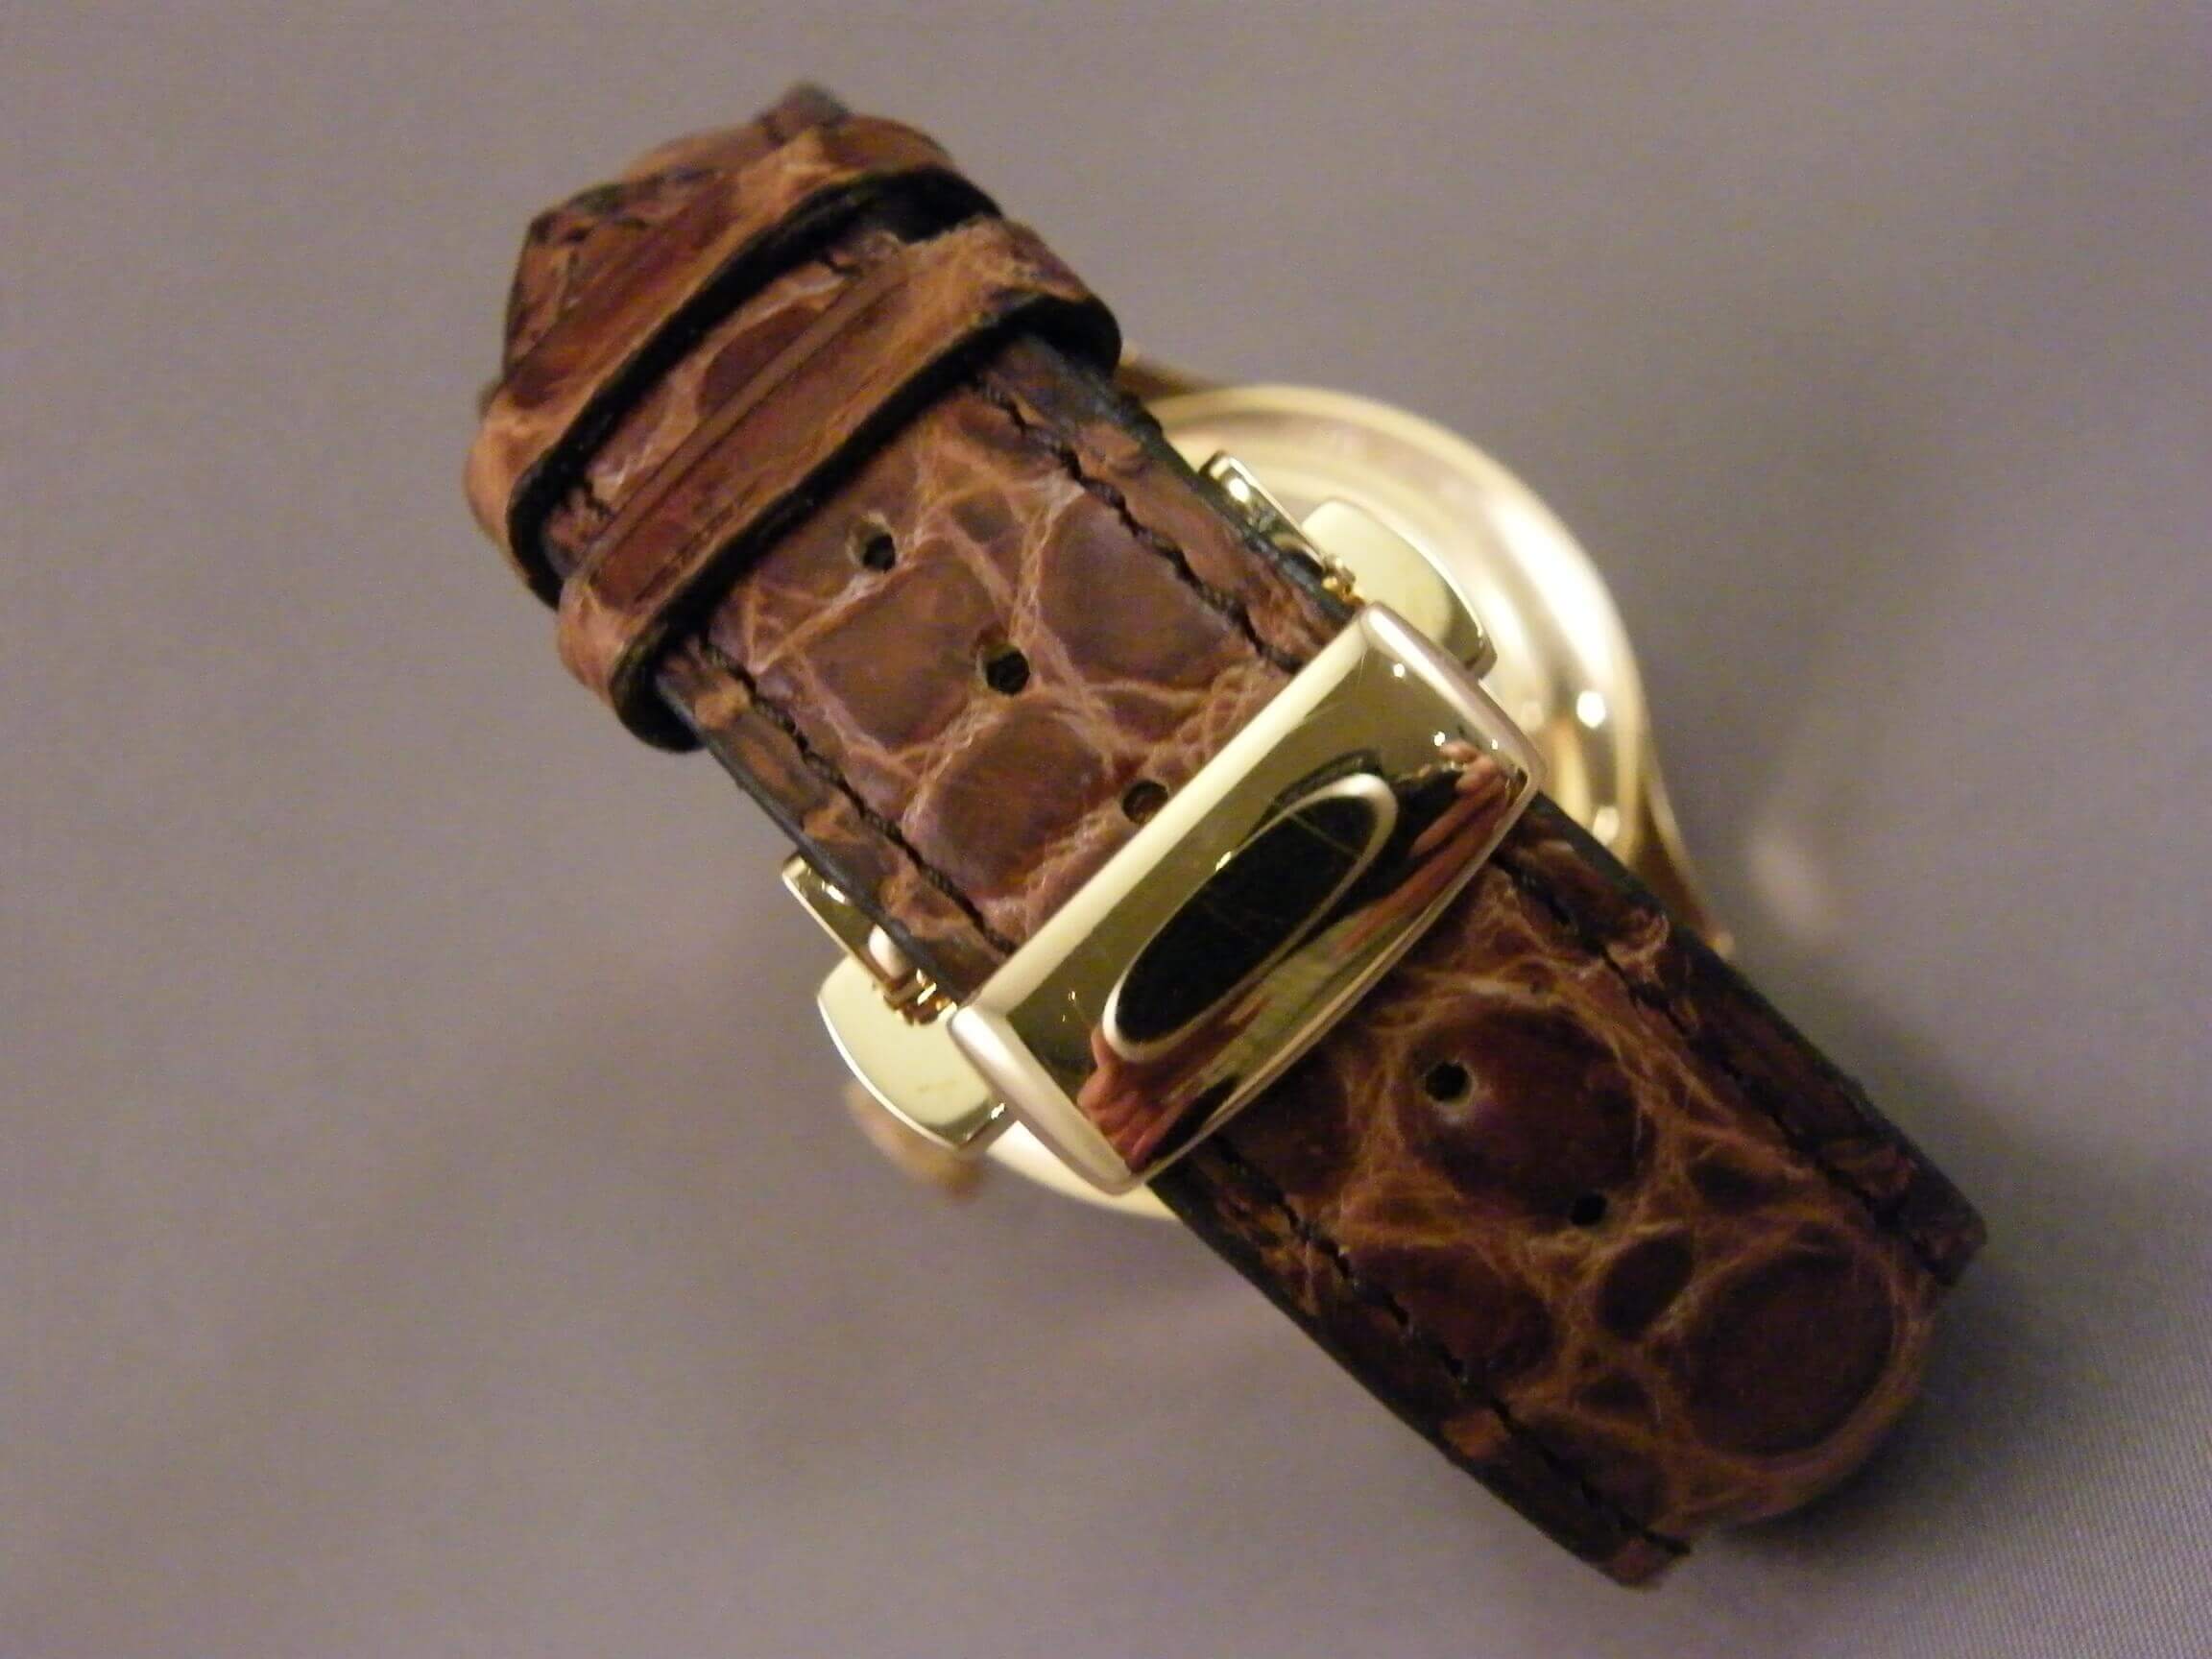 ontsnapping uit de gevangenis Voel me slecht trimmen Horlogeband laten maken | Juwelier Helmond